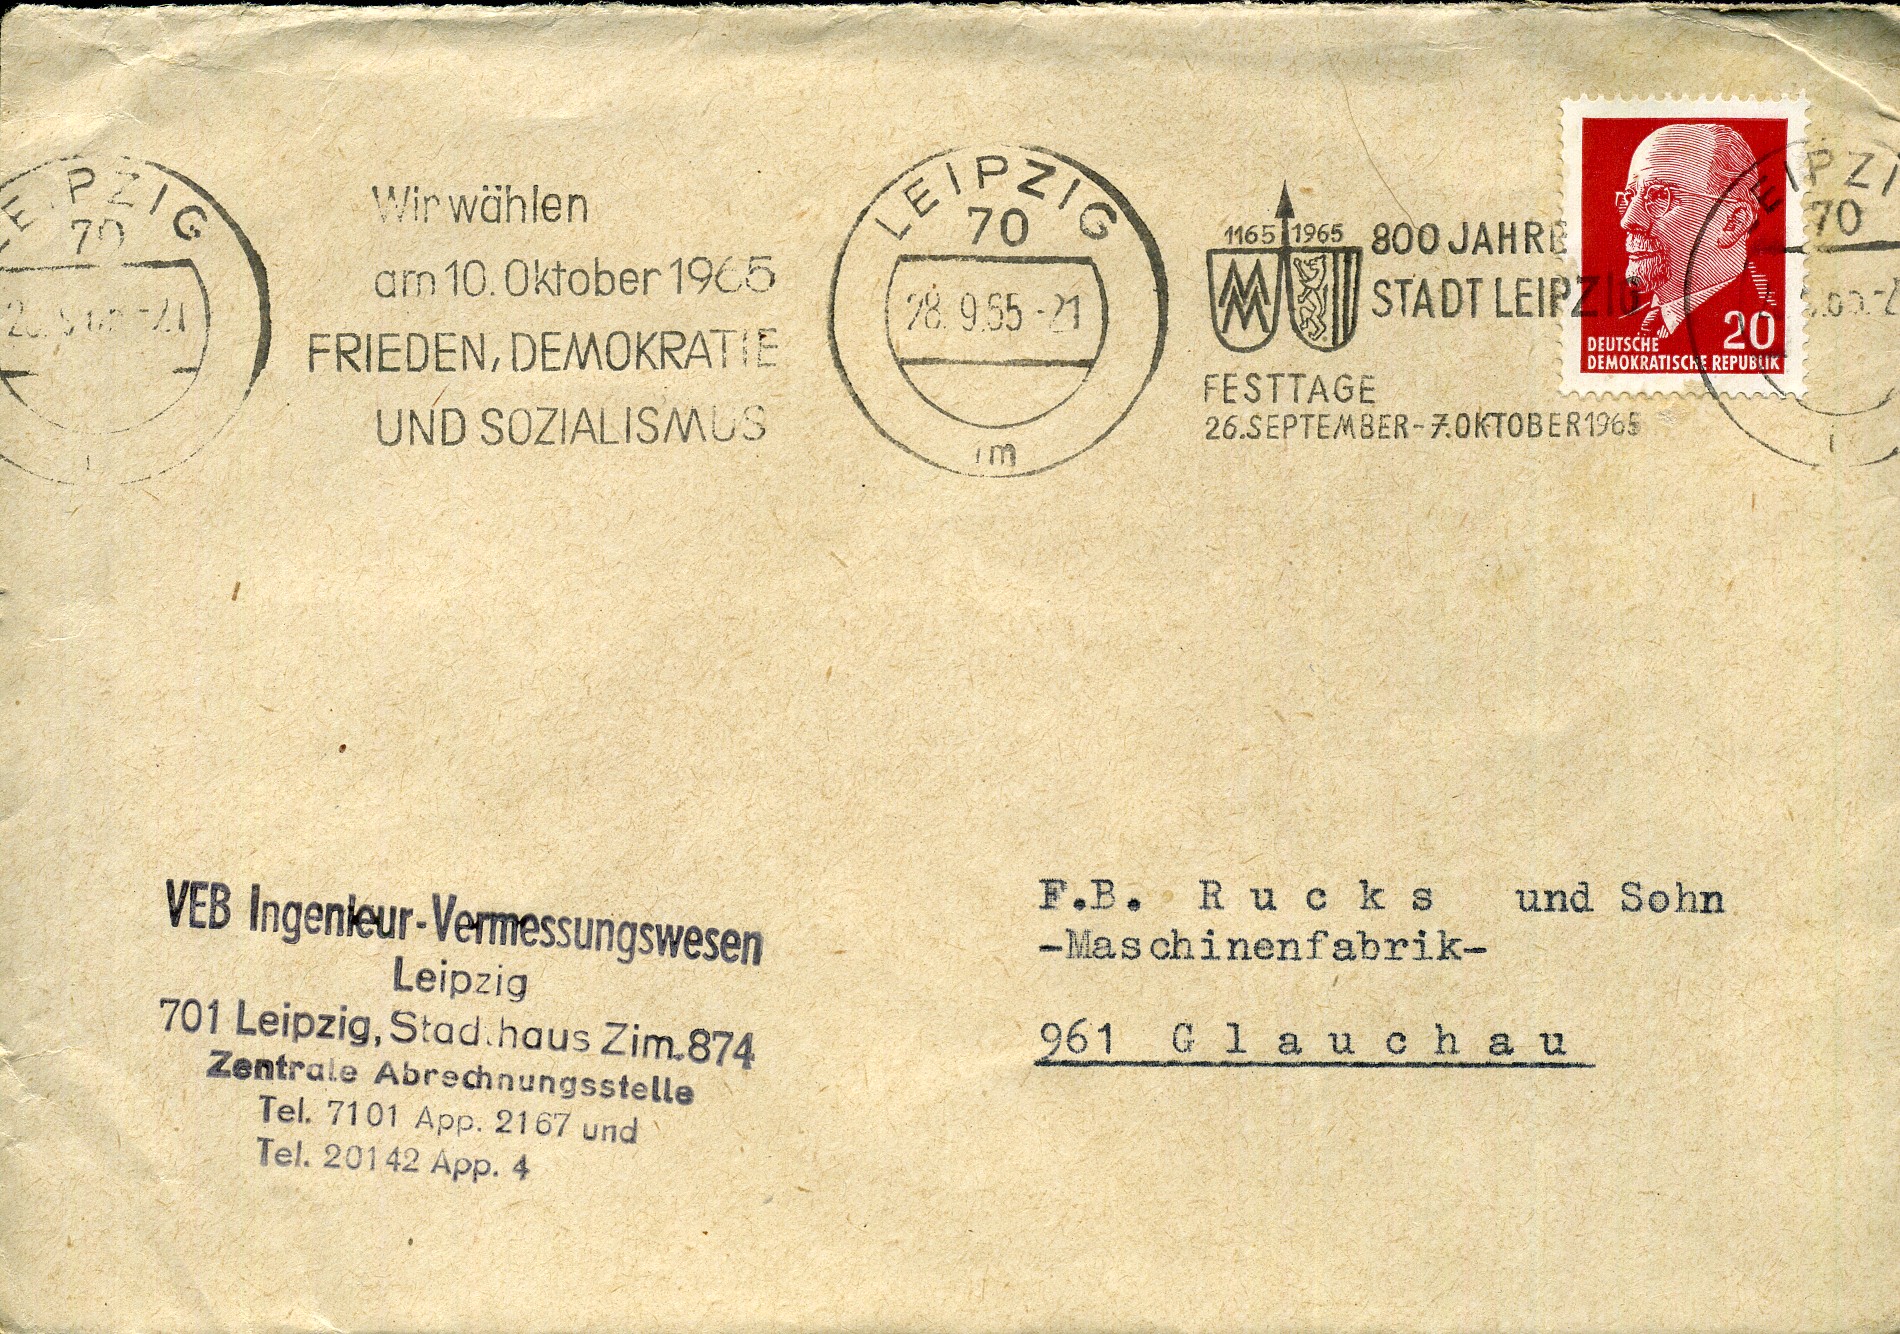 Wir wählen am 10. Oktober 1965 FRIEDEN, DEMOKRATIE UND SOZIALISMUS - Maschinenwerbestempel - Leipzig